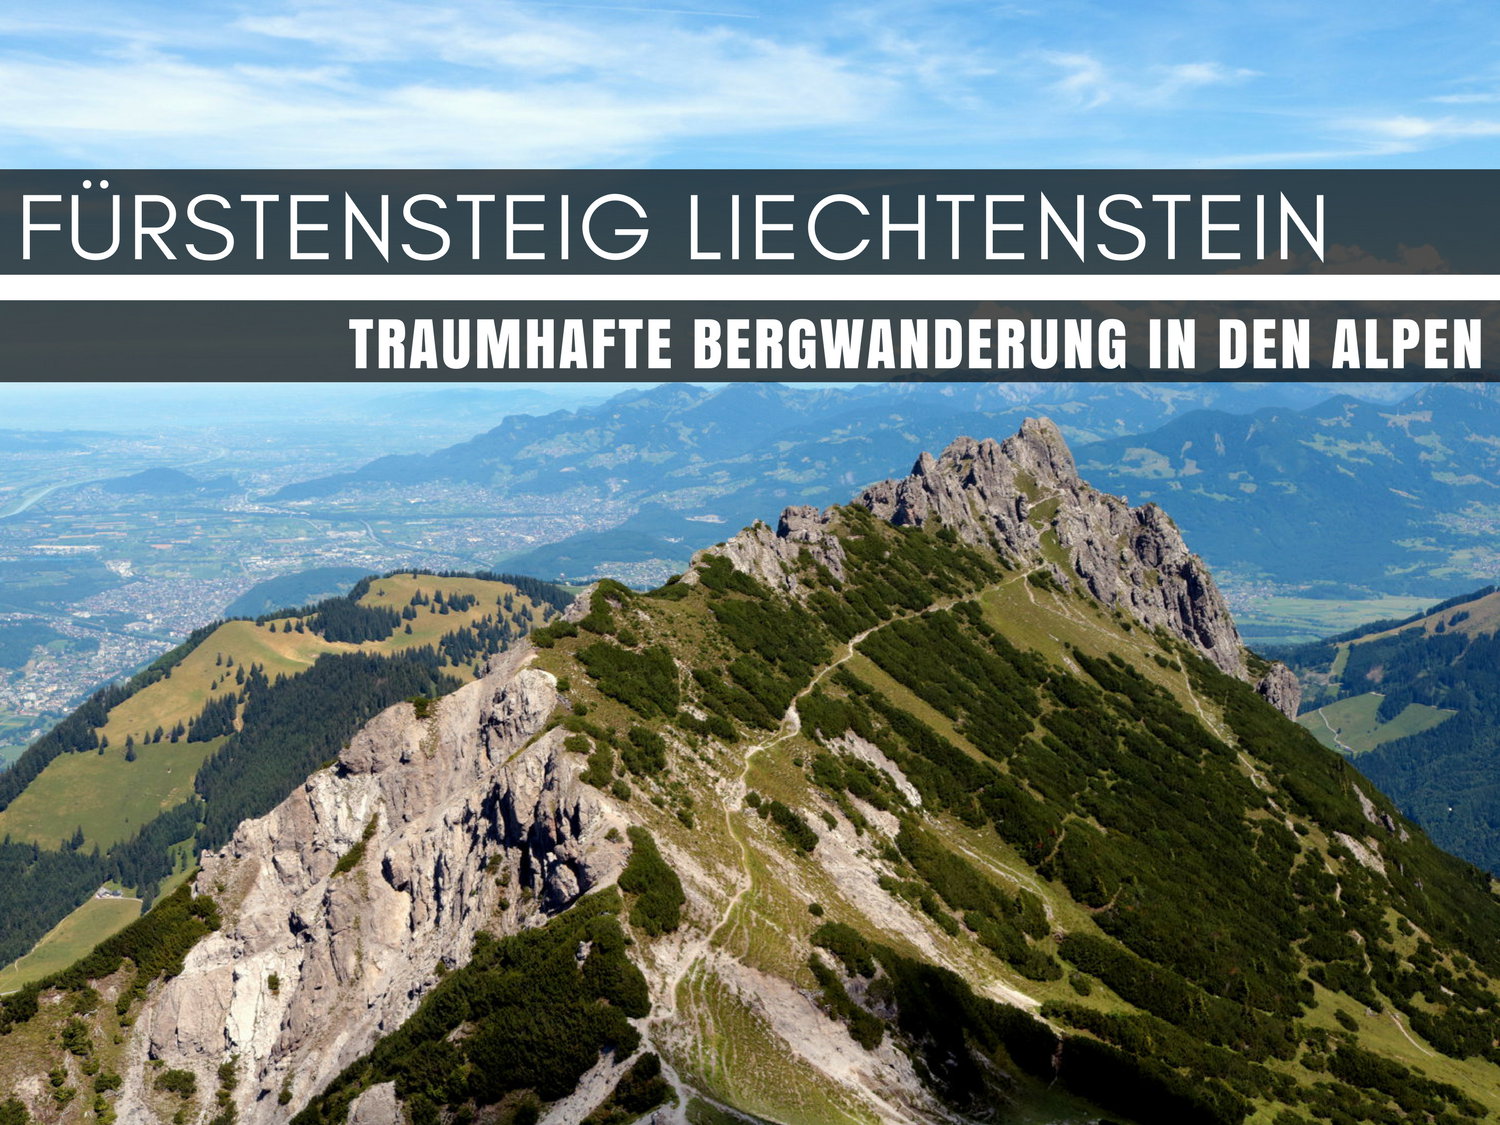 Fürstensteig Liechtenstein: Traumhafte Bergwanderung in den Alpen